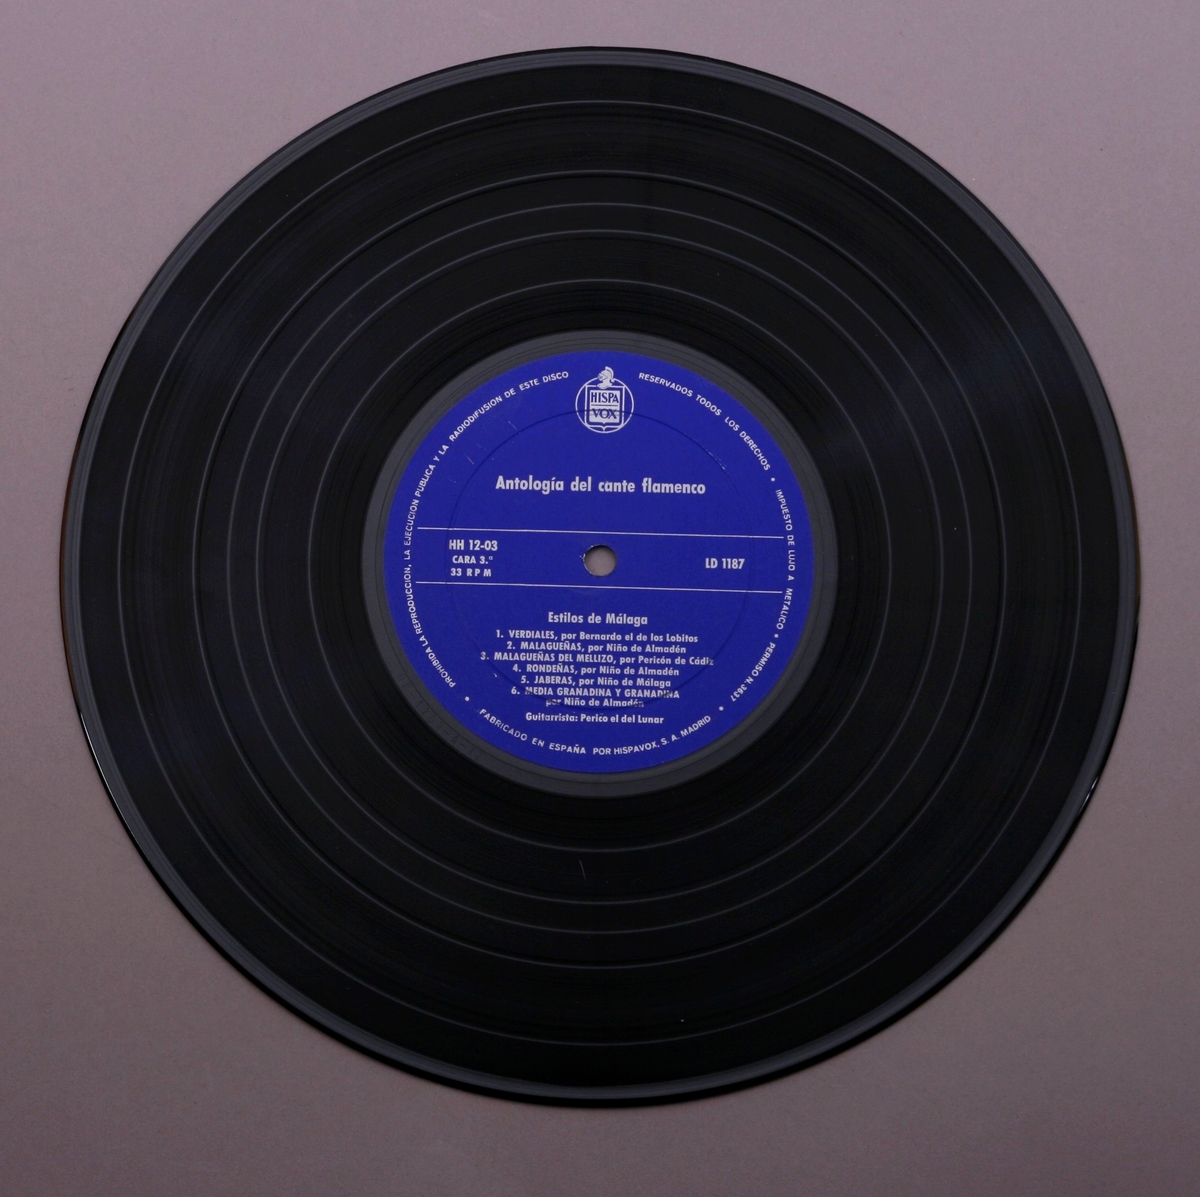 Tre grammofonplater i svart vinyl og et plateomslag i form av en eske, i papp trukket med stoff. Et teksthefte. Platene ligger i plastlommer og papirlommer.